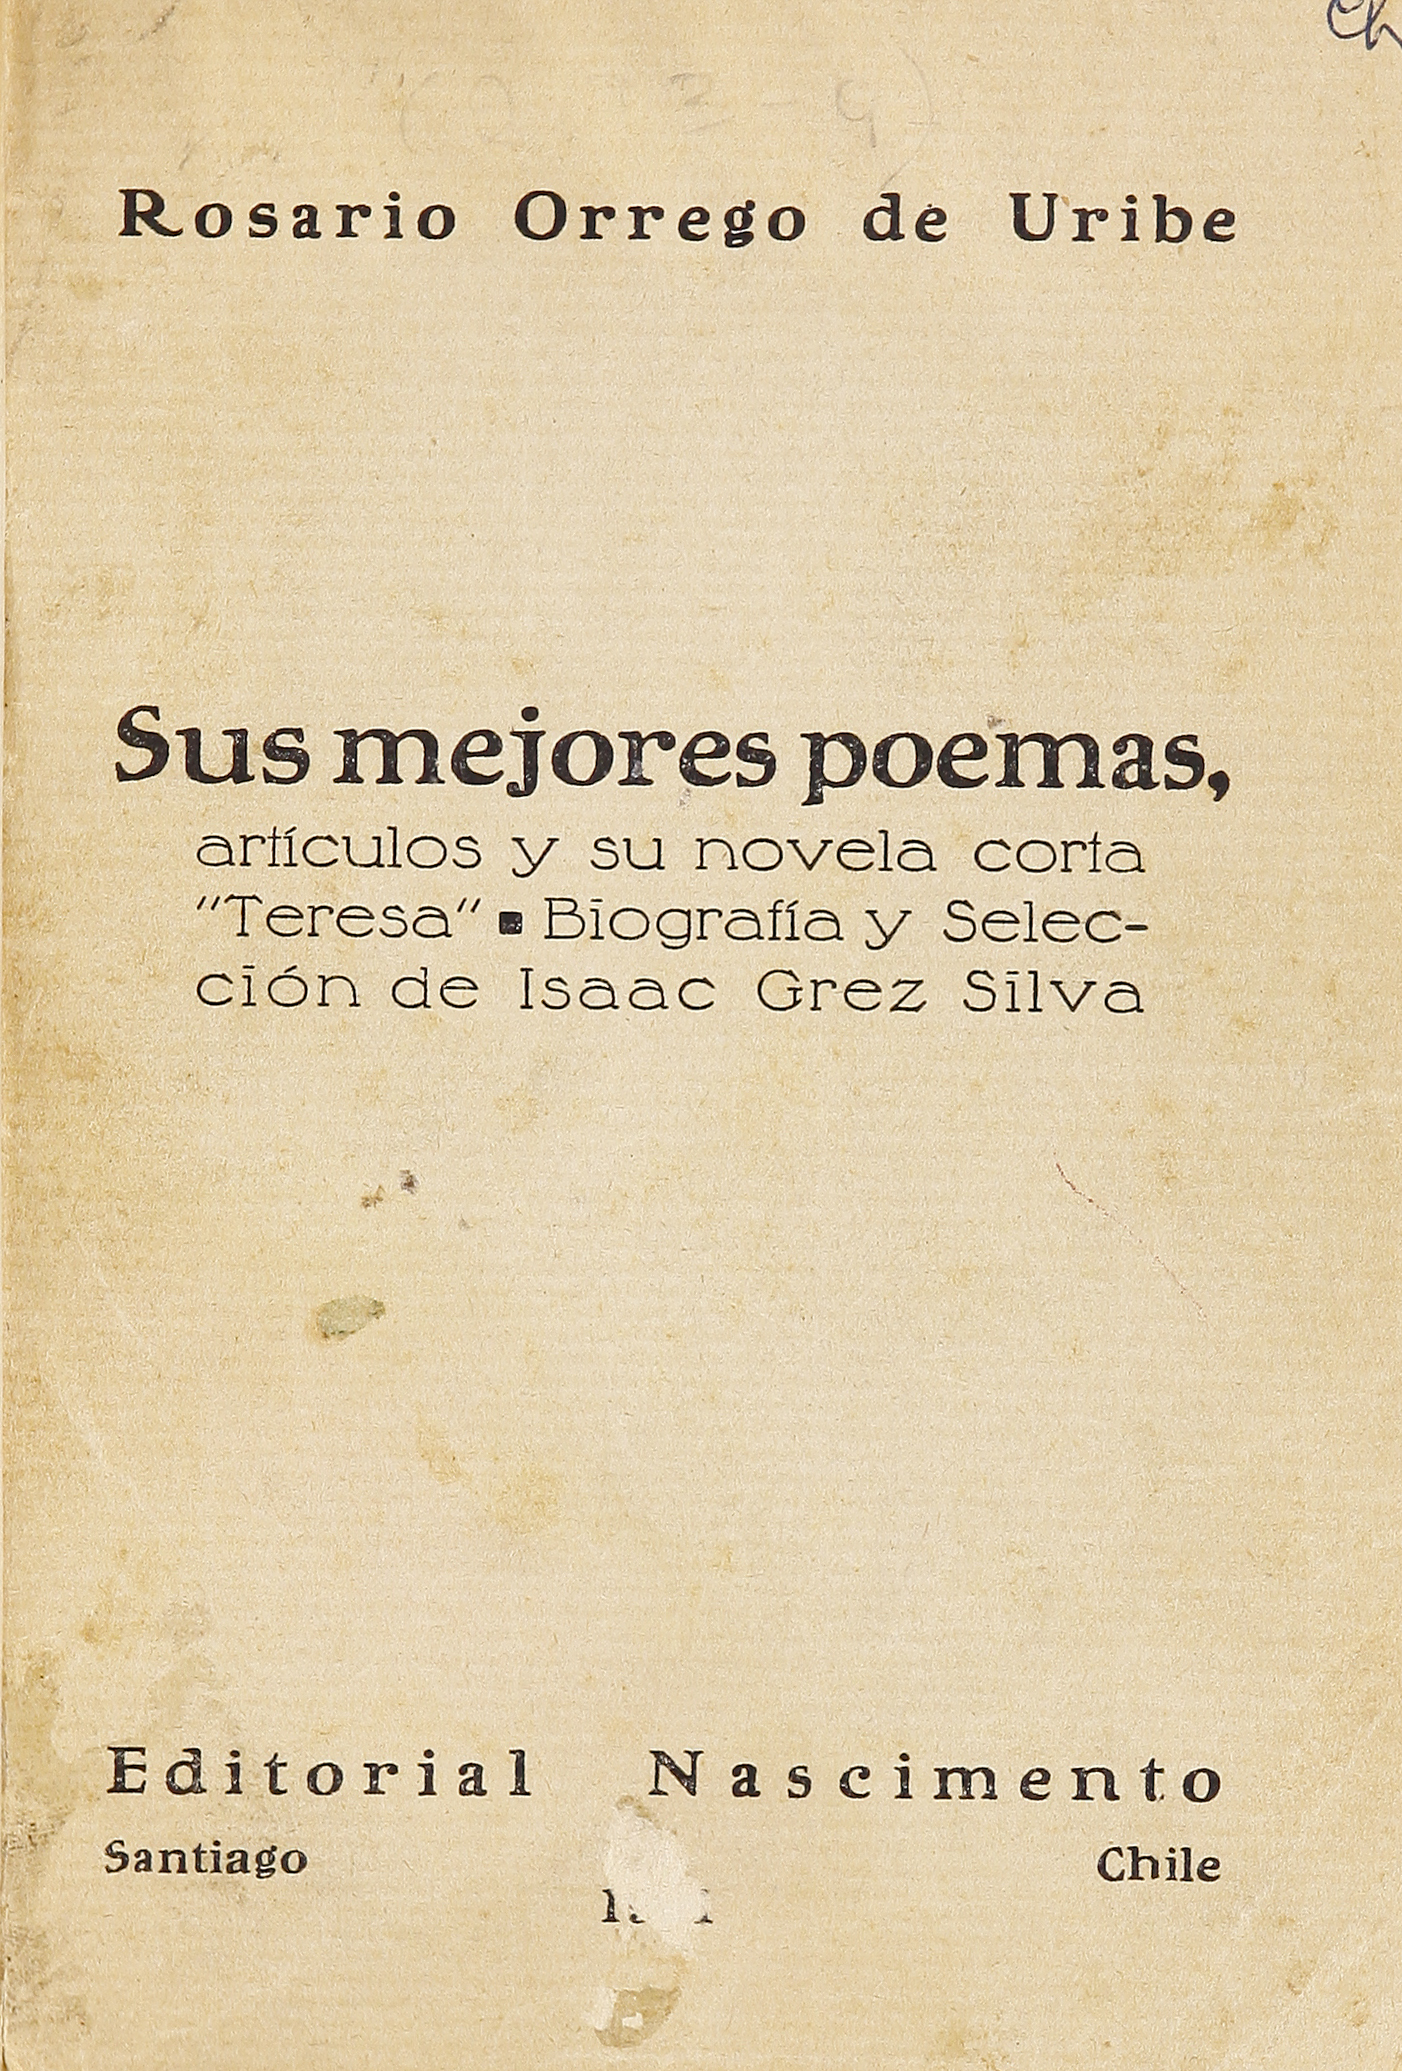 Retencion Intrusión Preferencia Sus mejores poemas, artículos y su novela corta "Teresa" - Memoria Chilena,  Biblioteca Nacional de Chile